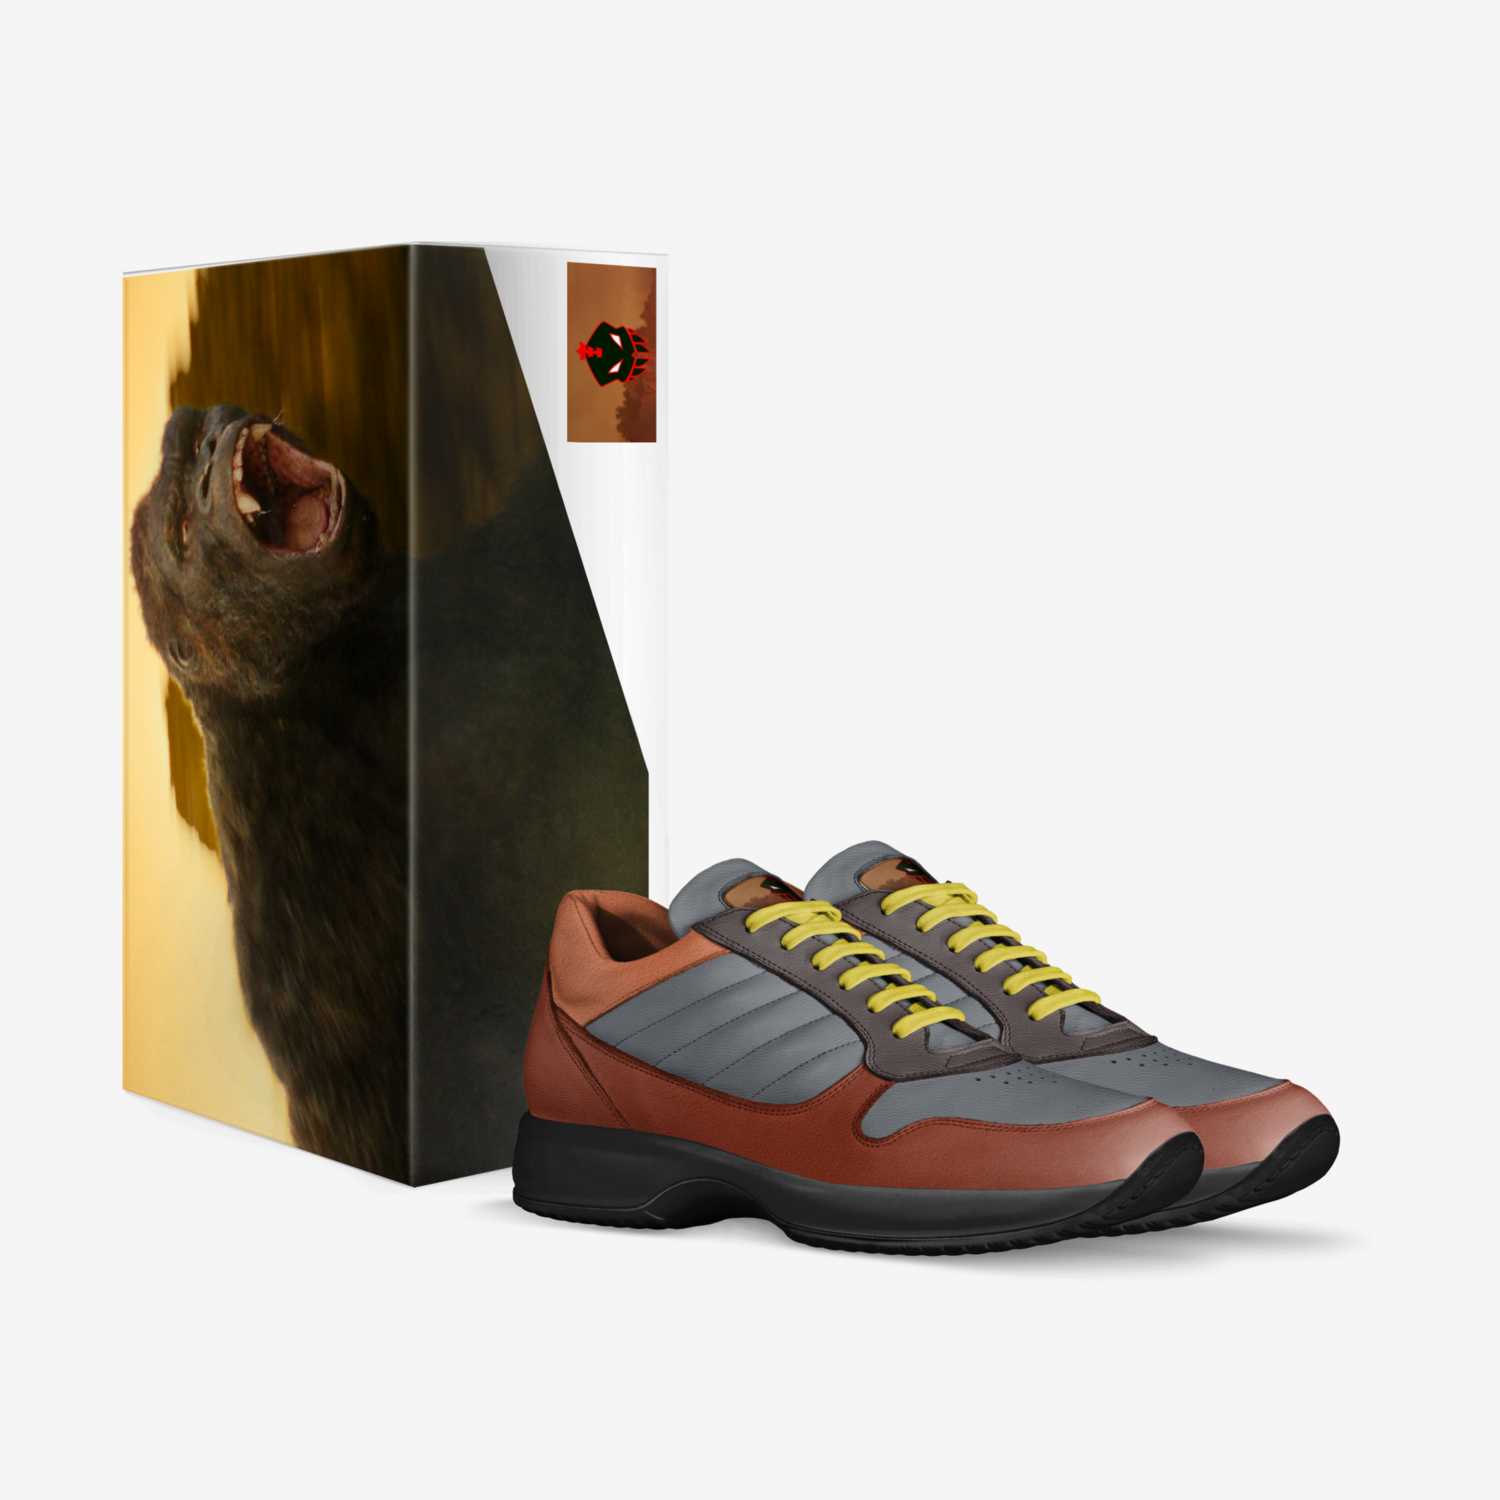 KaijuMassacre custom made in Italy shoes by Felix Kaiju | Box view